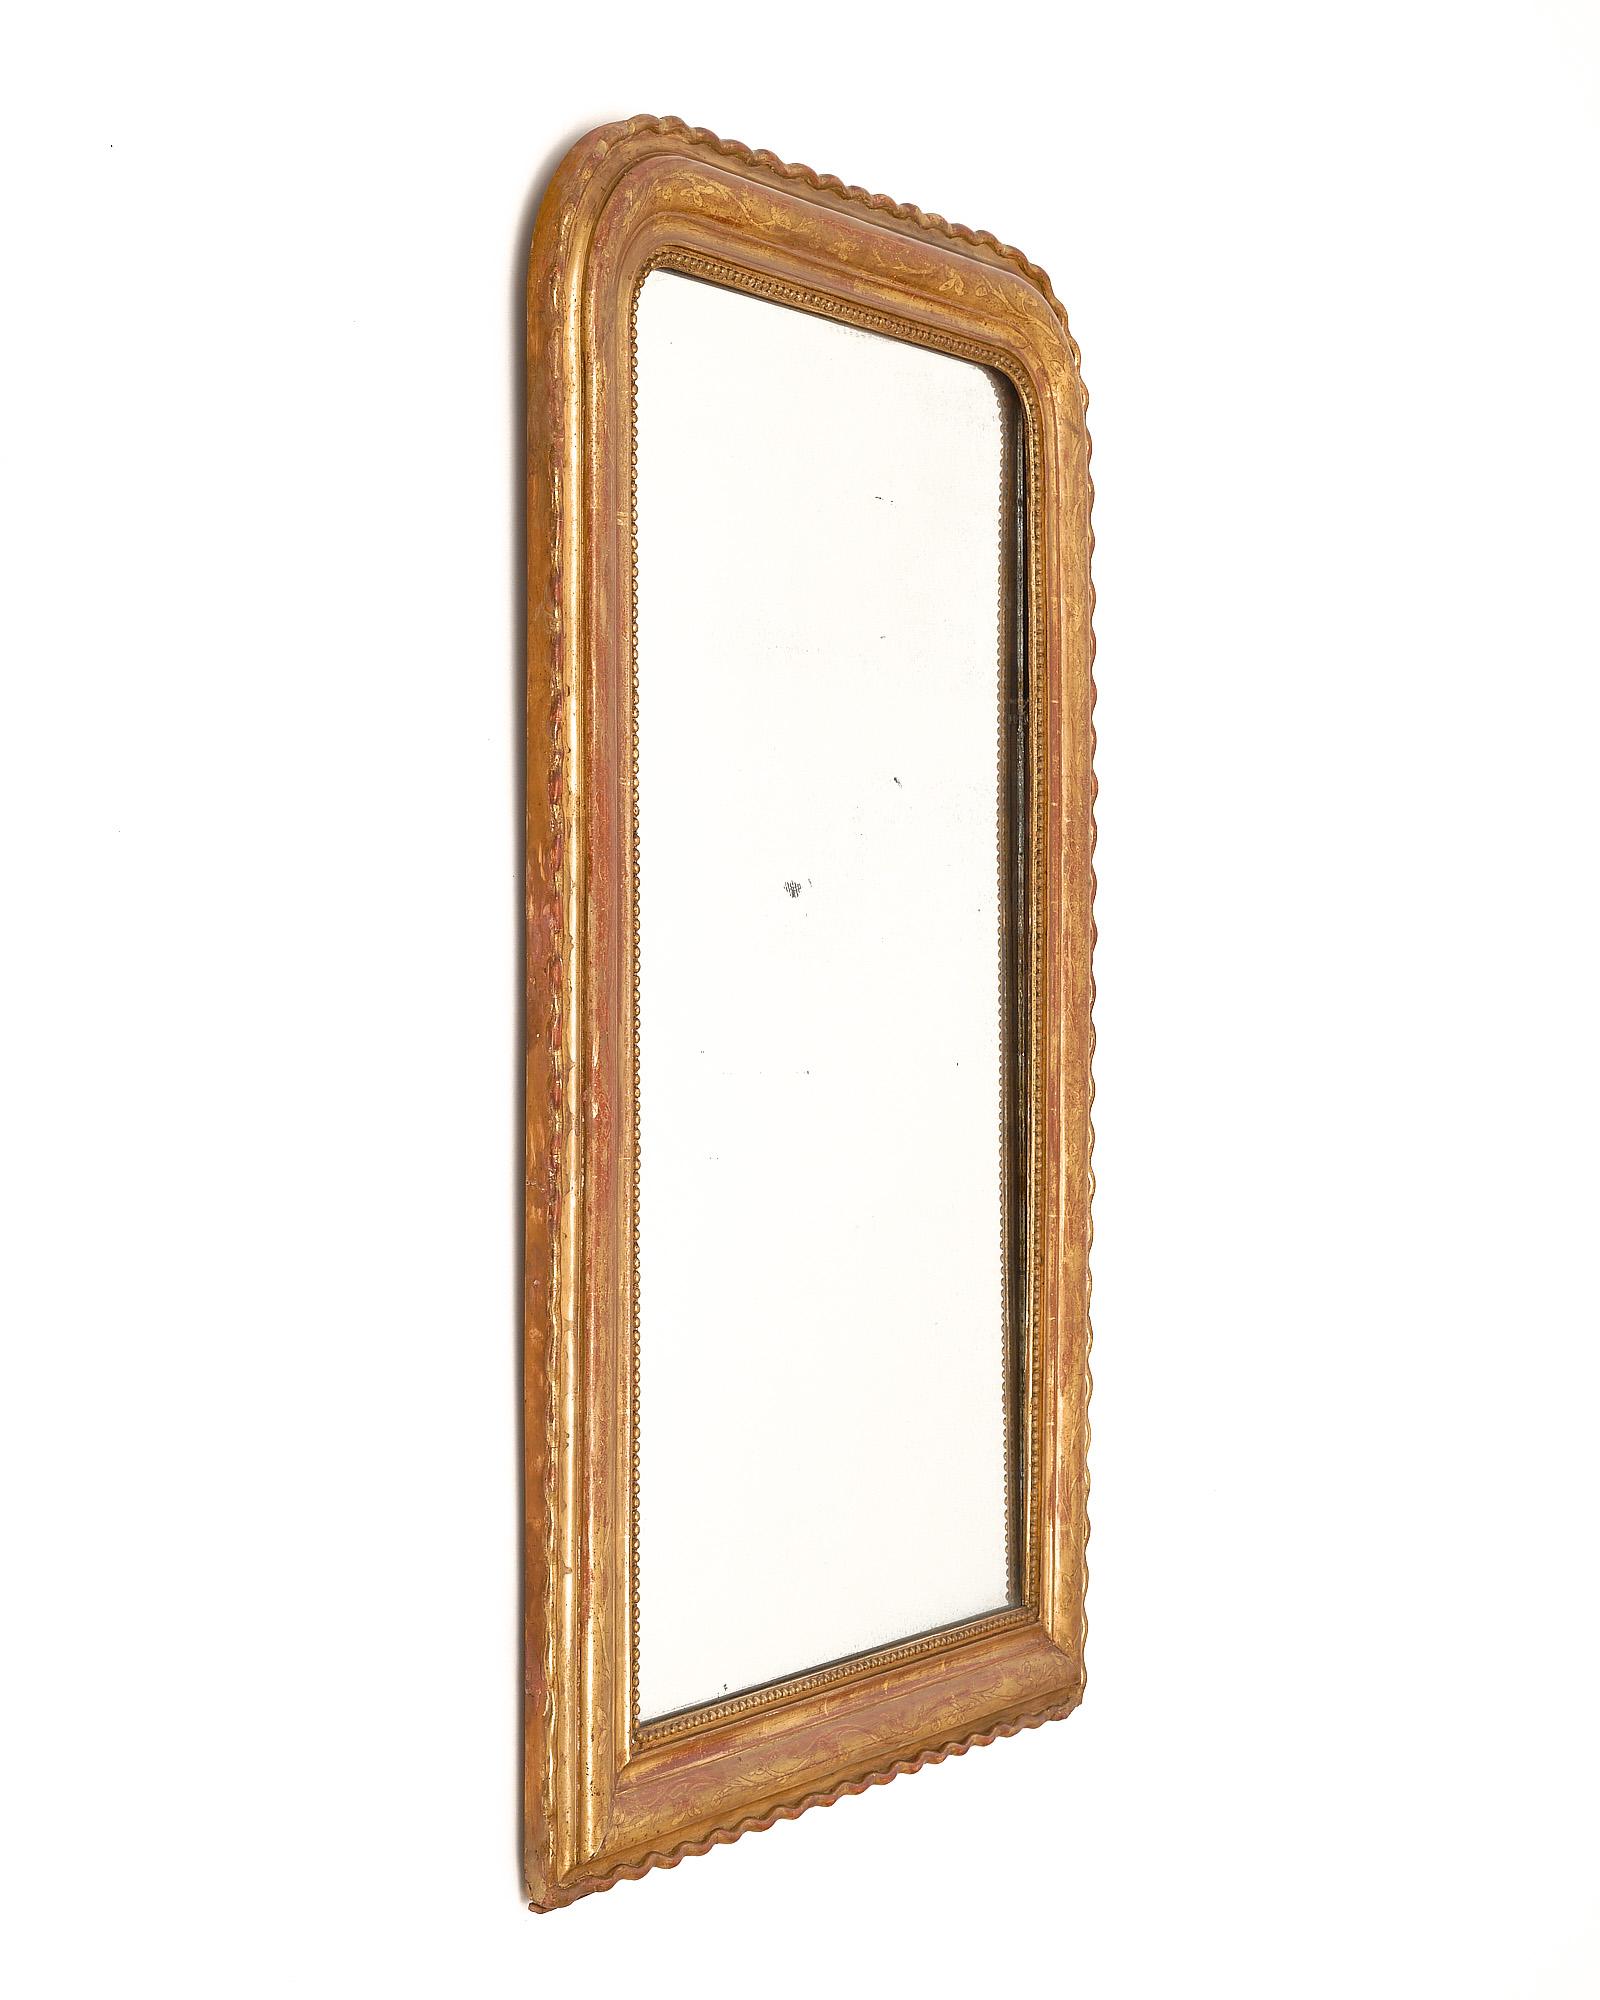 Spiegel, französisch, aus der Zeit von Louis Philippe. Dieser Spiegel ist aus Massivholz gefertigt, handgeschnitzt und stuckiert. Der neoklassizistische Spiegel ist mit floralen Ziselierungen versehen, und die sienafarbene Grundglasur ist mit